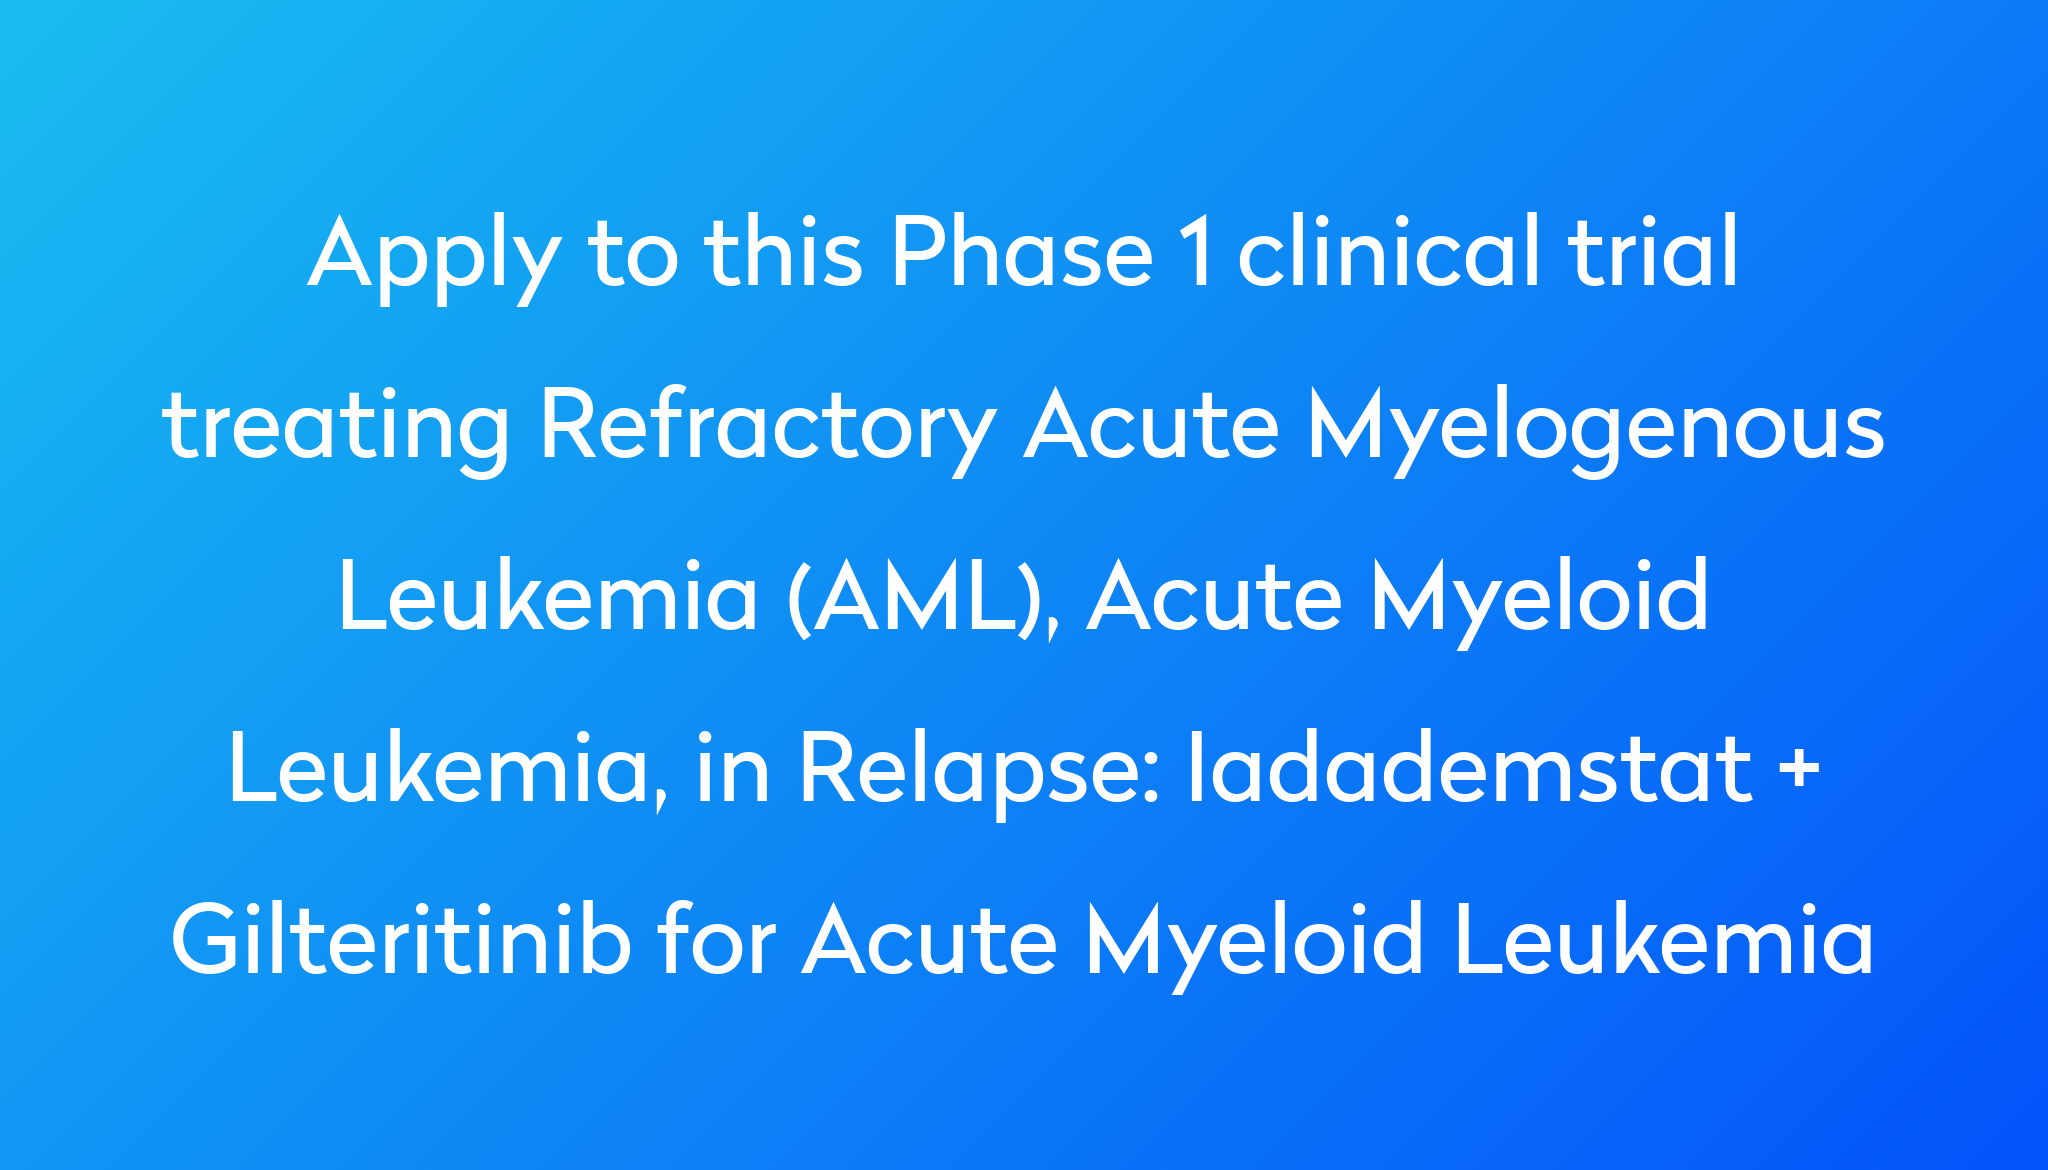 Iadademstat + Gilteritinib for Acute Myeloid Leukemia Clinical Trial